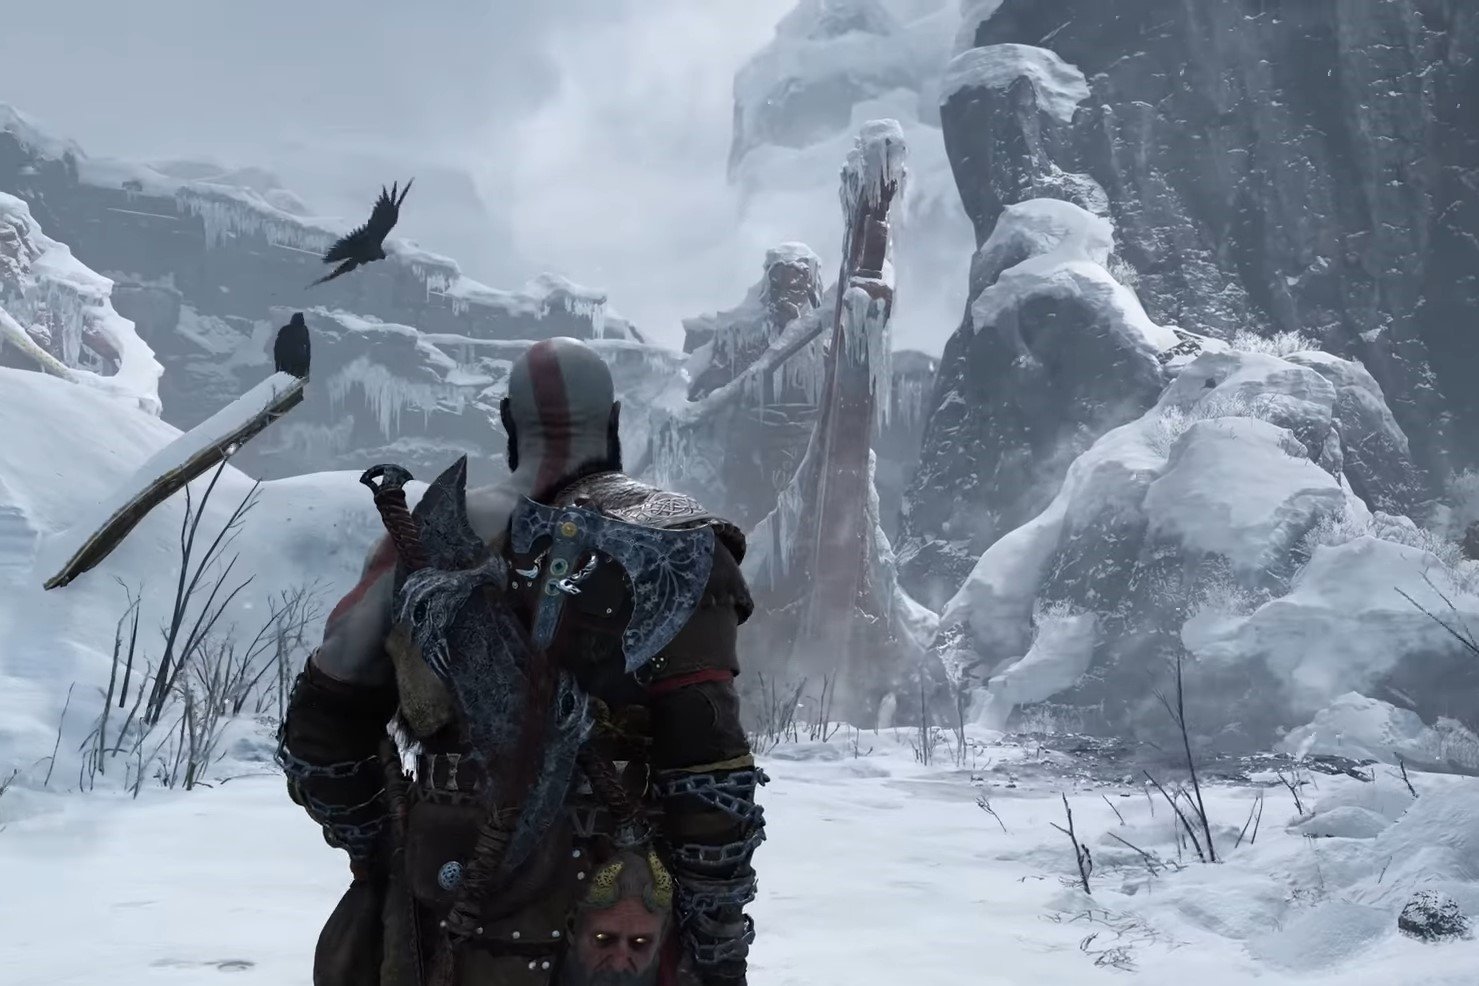 God of War: Ragnarok é confirmado para PS5 e ganha trailer de gameplay